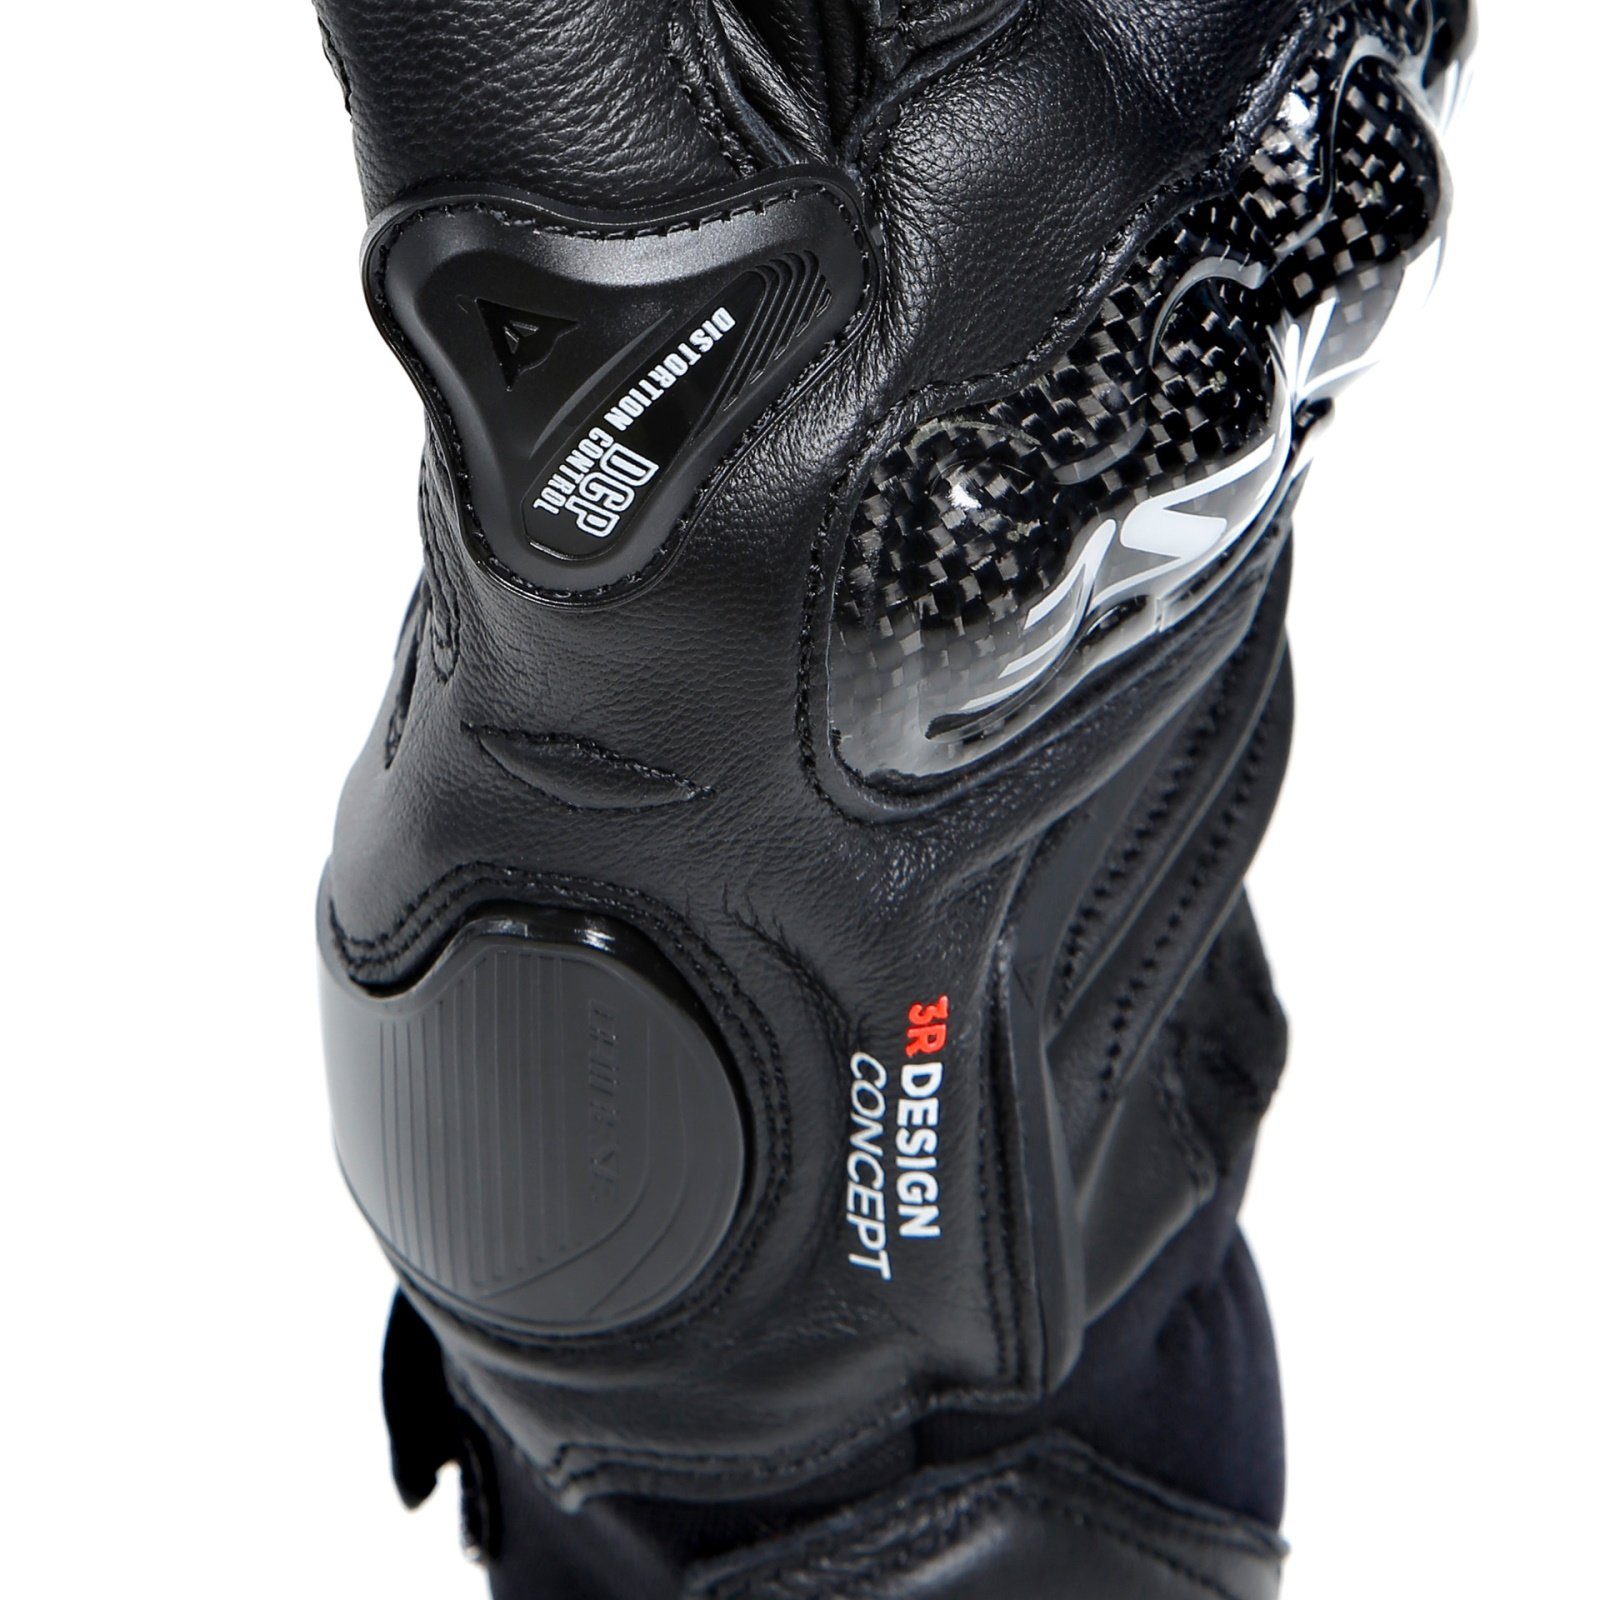 Kurz Carbon Motorradhandschuhe schwarz / 4 Dainese Black Dainese schwarz Sporthandschuhe